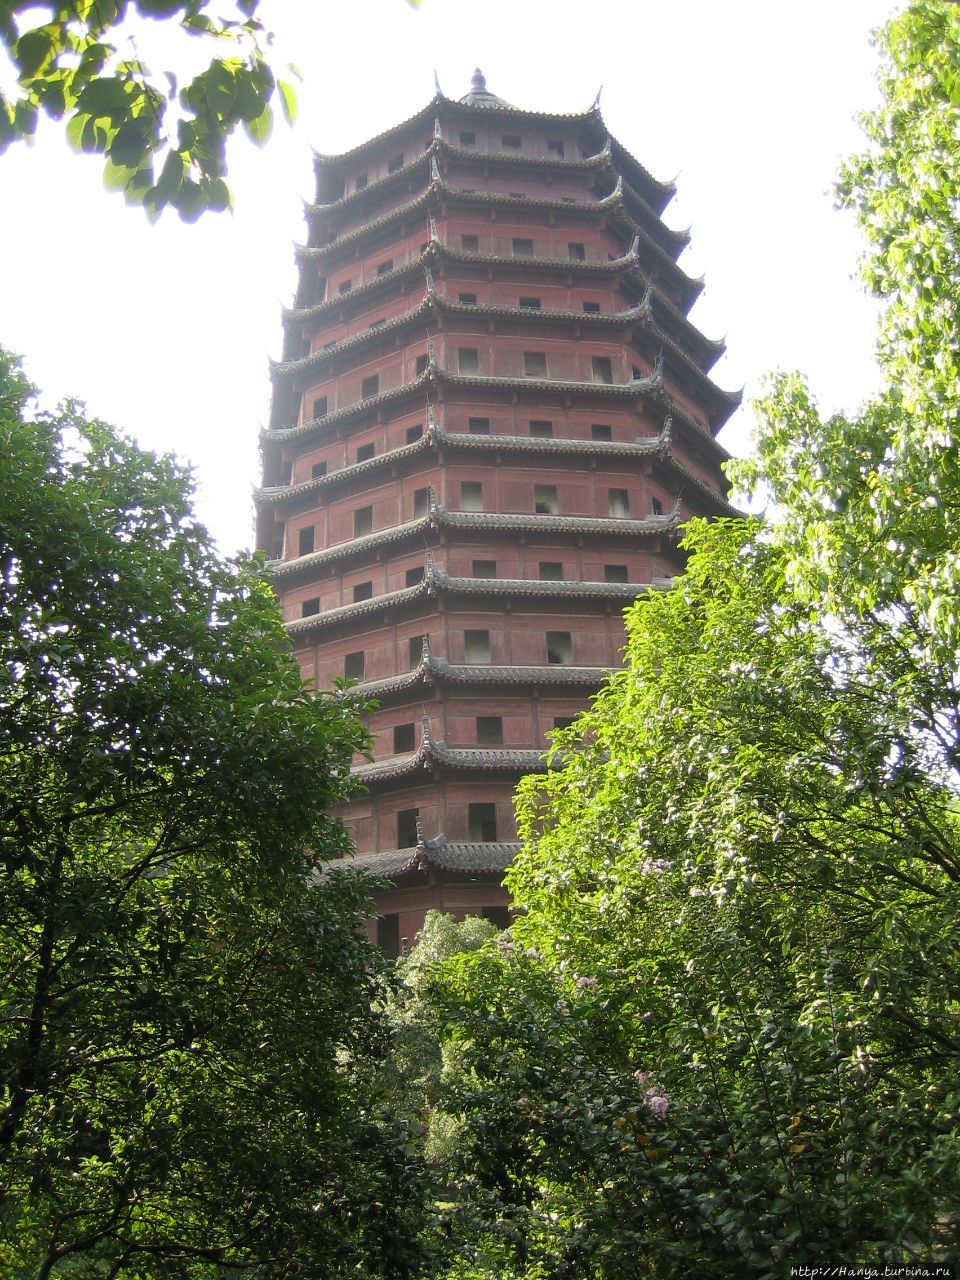 Пагода 6 гармоний Люхэта (12 в.) в честь высших богов буддийского пантеона. 8-угольная пагода имеет 13 ярусов. Высота 60 м Ханчжоу, Китай